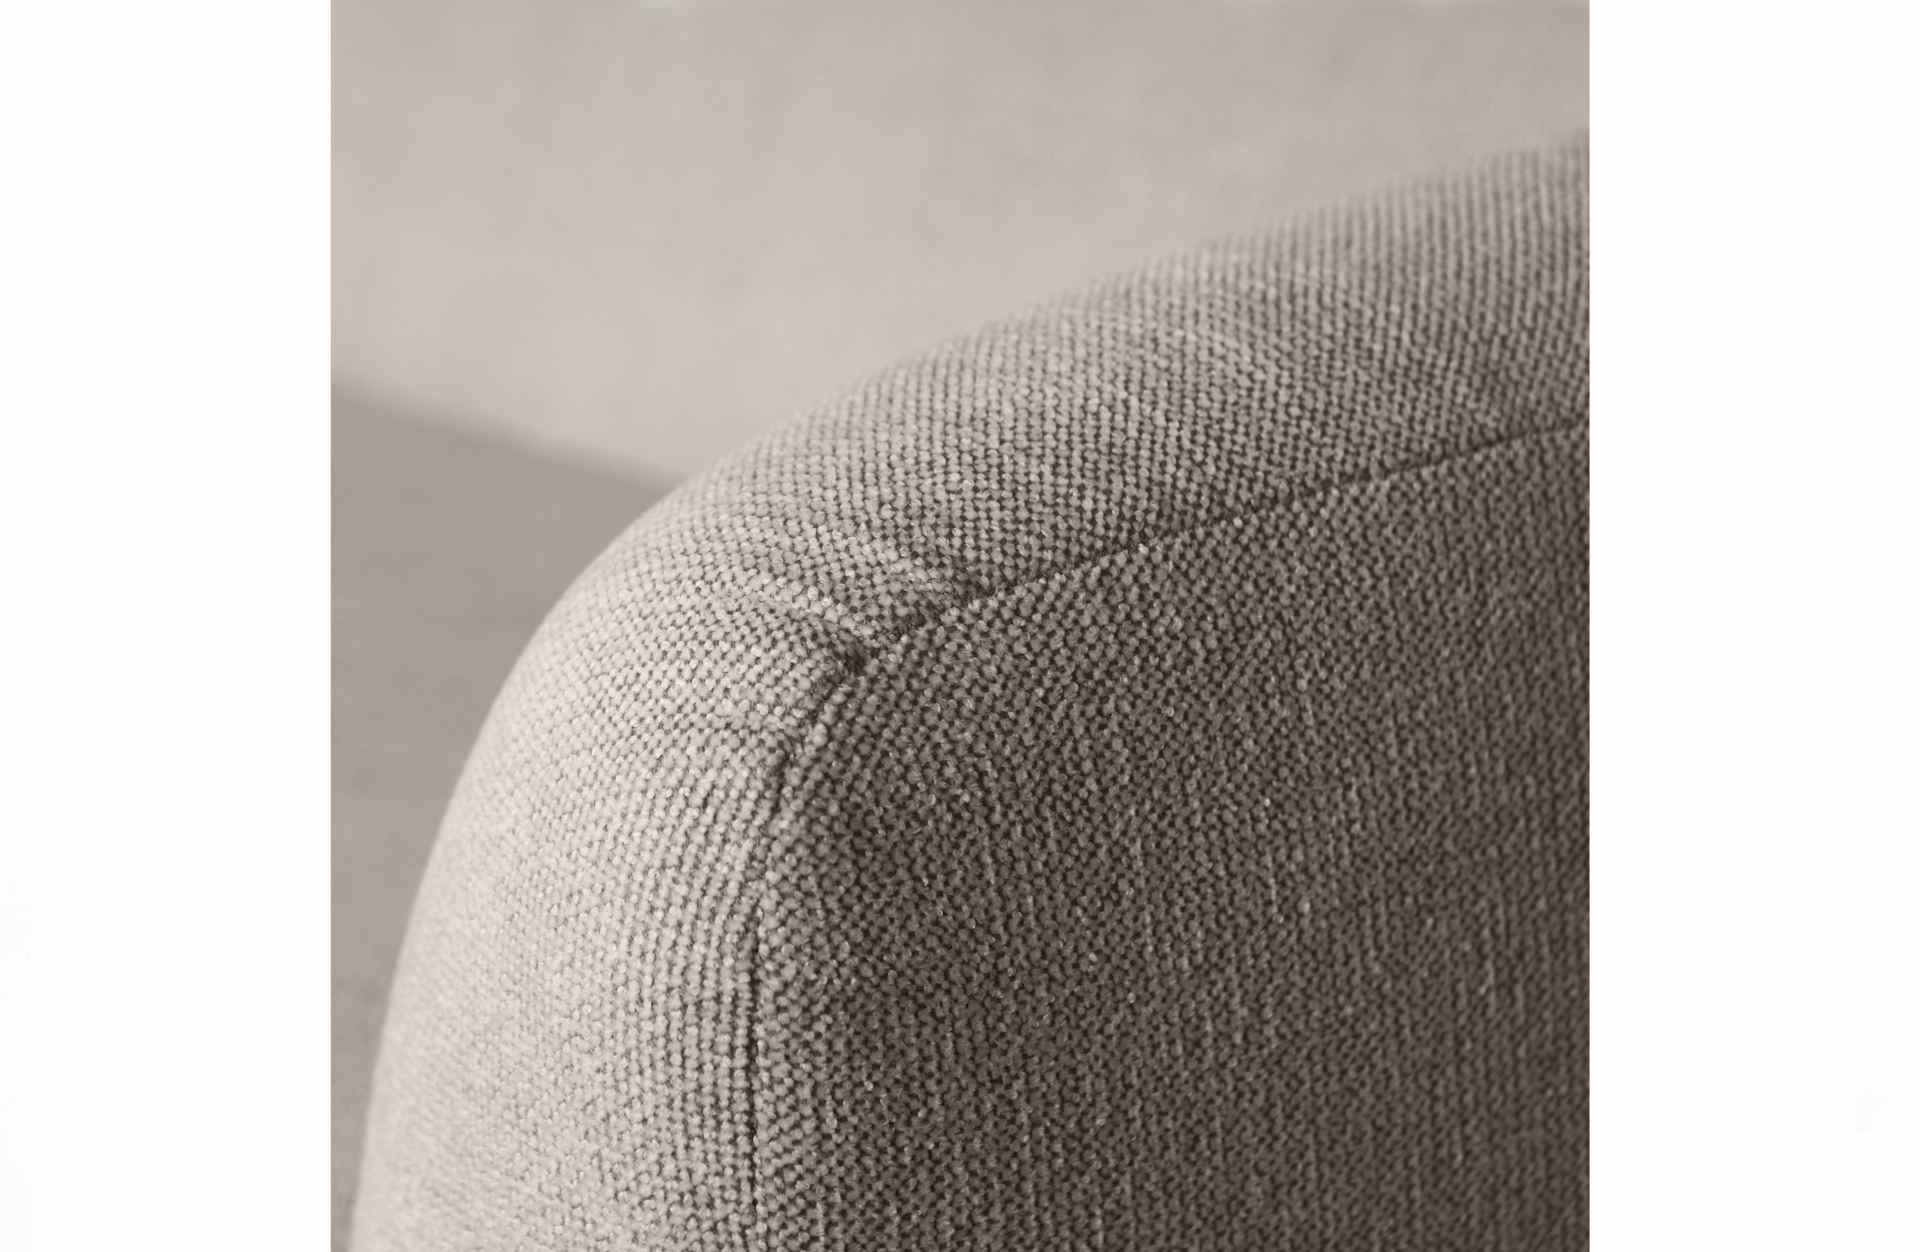 Das 3-Sitzer Sofa Sloping überzeugt mit seinem modernen Design. Gefertigt wurde es aus Kunststofffasern, welche einen einen hellgrauen Farbton besitzen. Das Sofa hat eine Breite von 240 cm und eine Sitzhöhe von 43 cm.